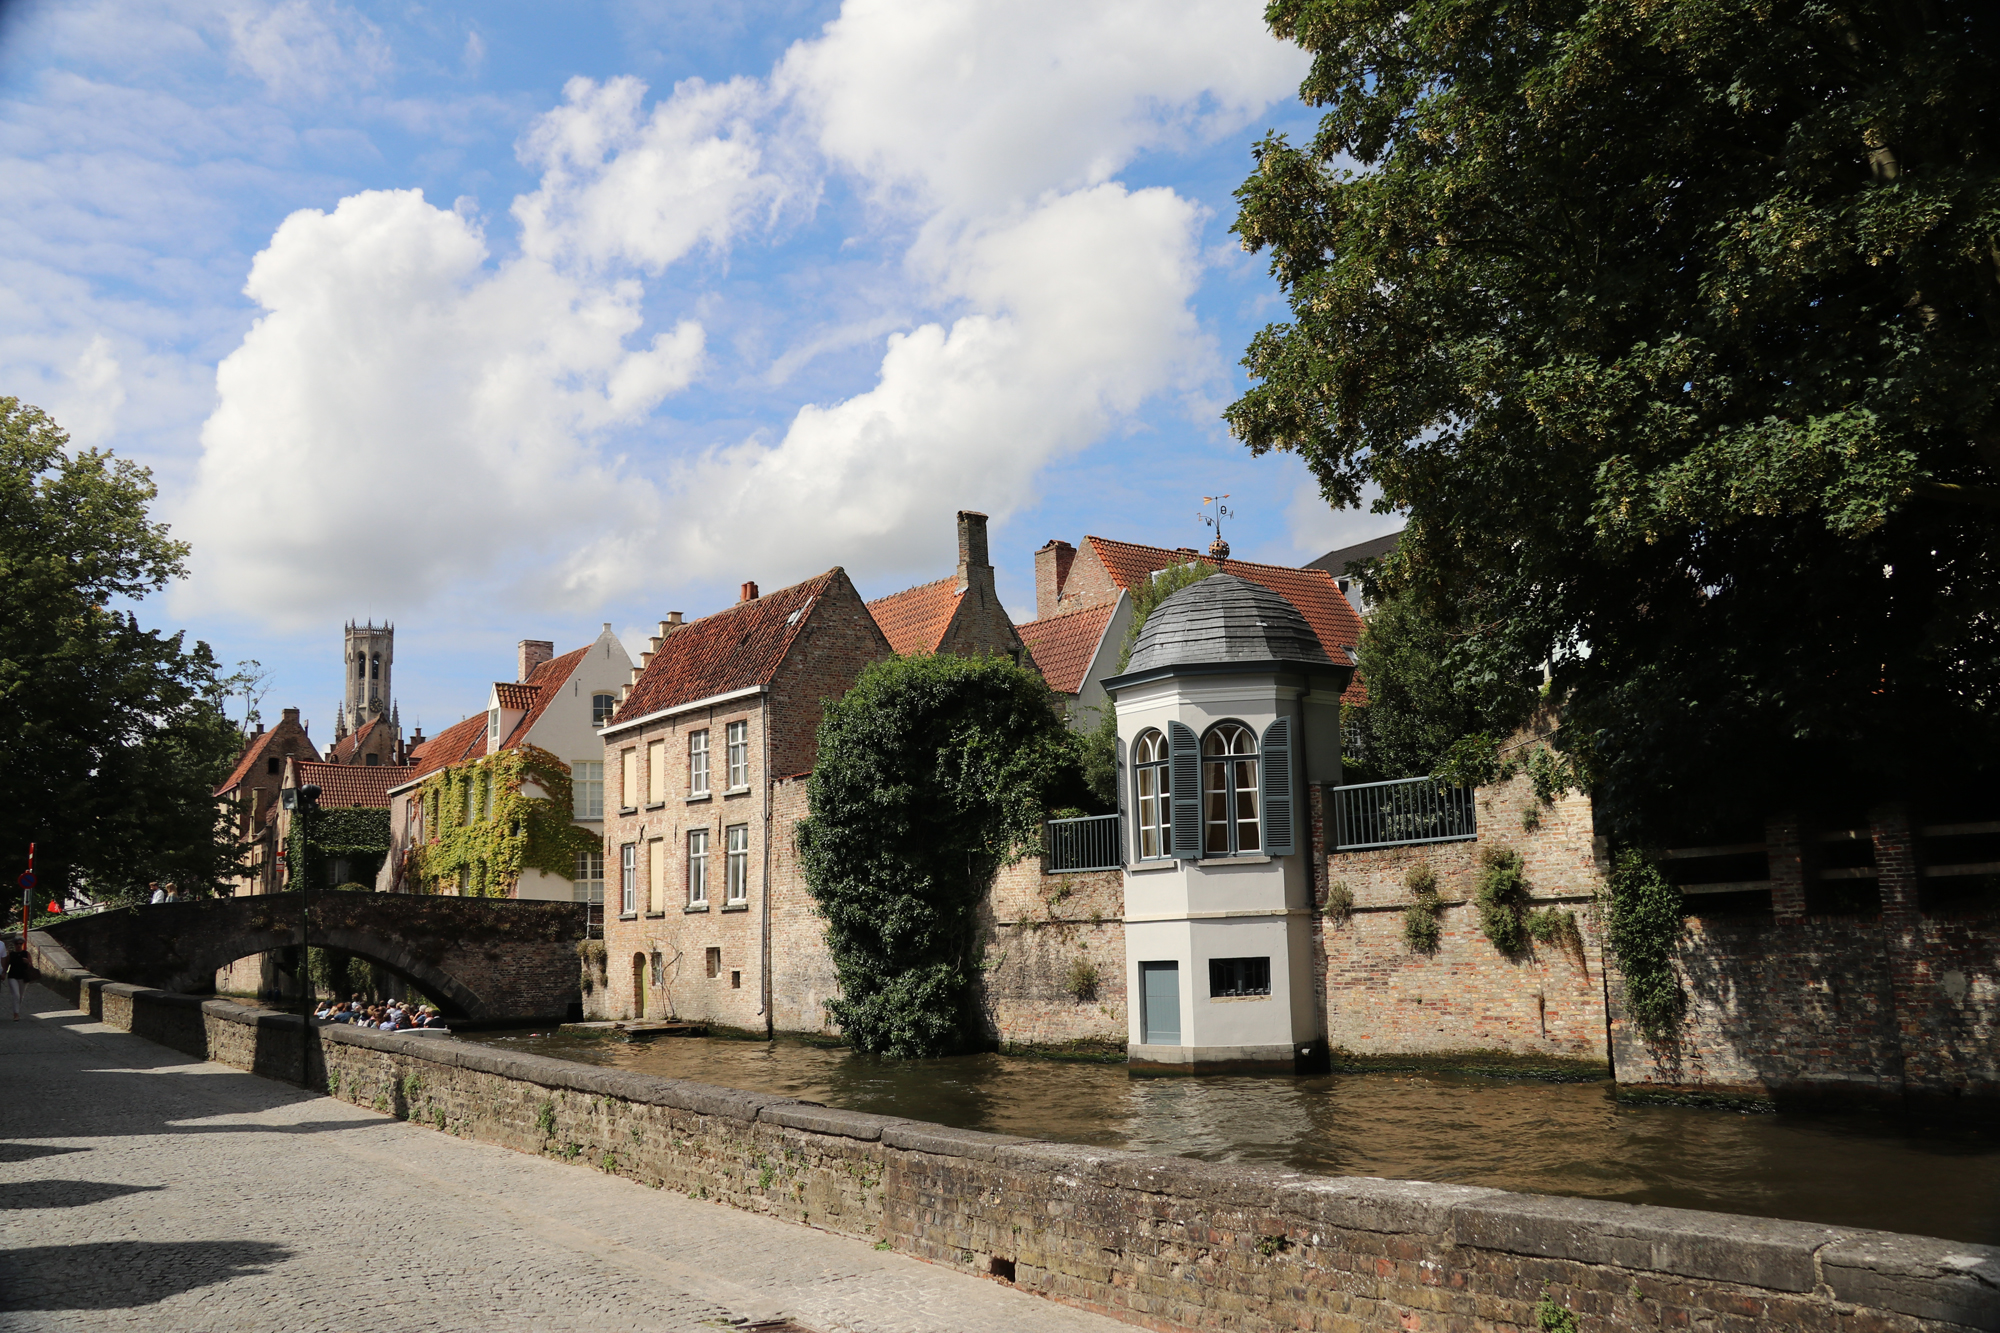 Weekendje Brugge in 10 beelden: Wandelen langs de grachten en mooie huizen